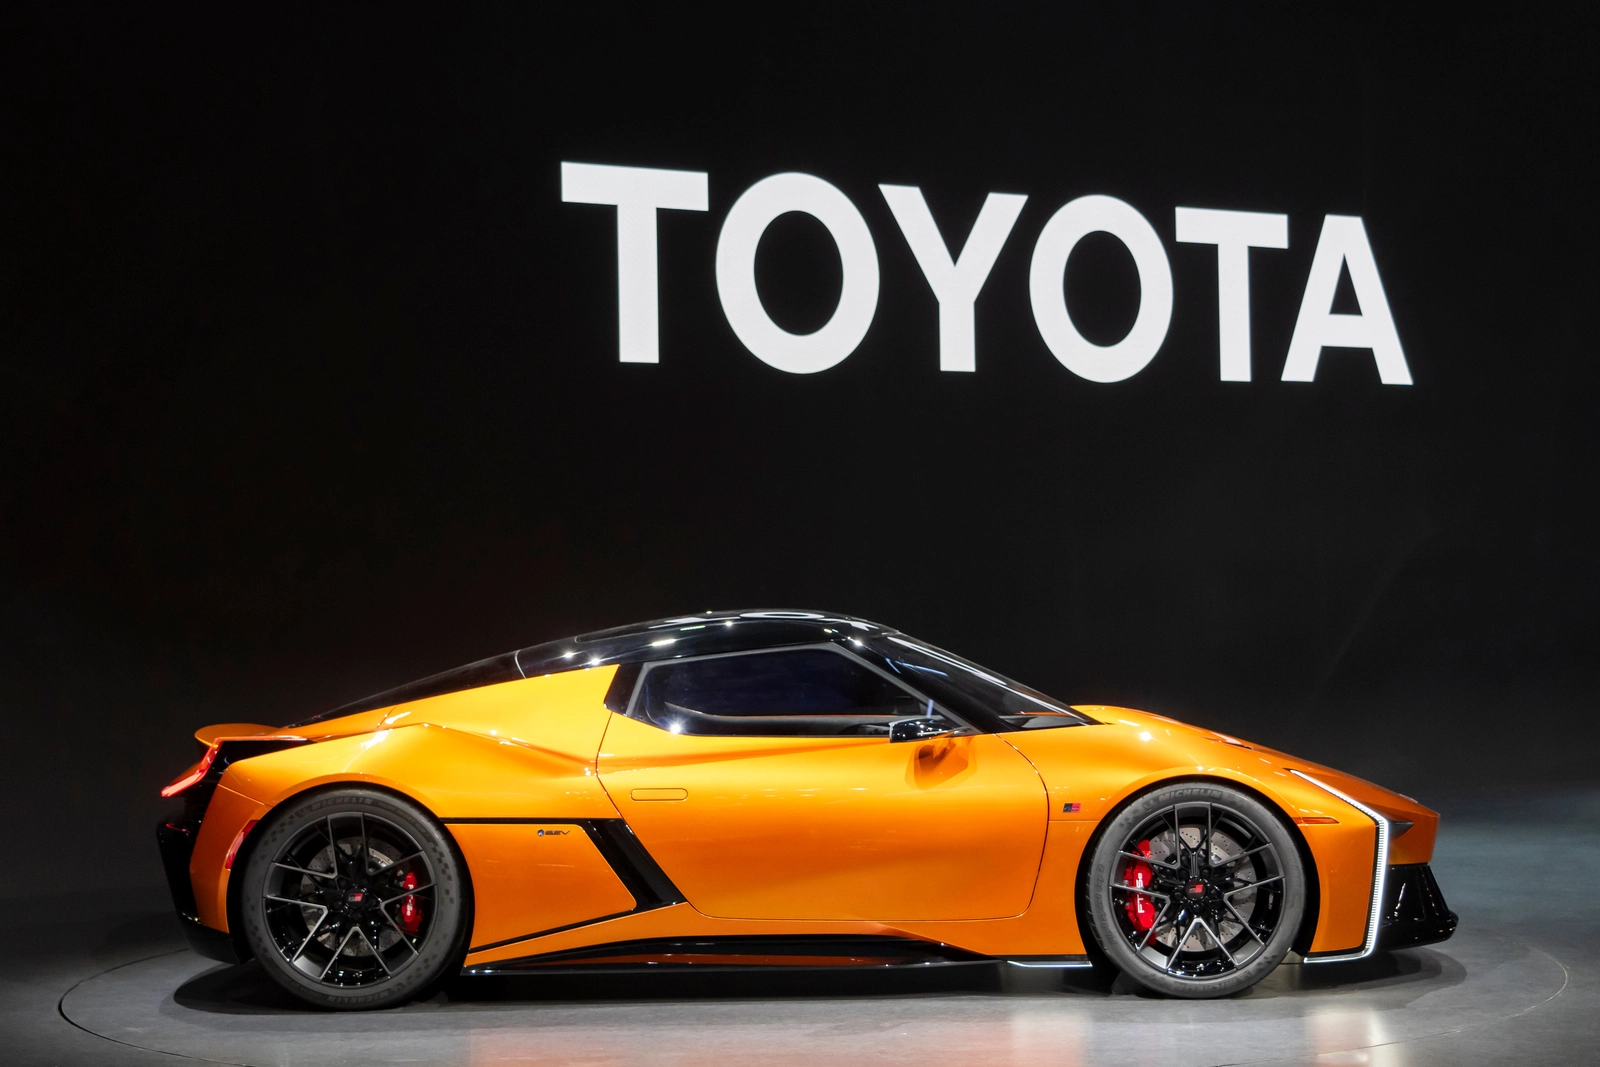 Toyota по-прежнему лидер мирового автопрома, но электромобилей продает мало